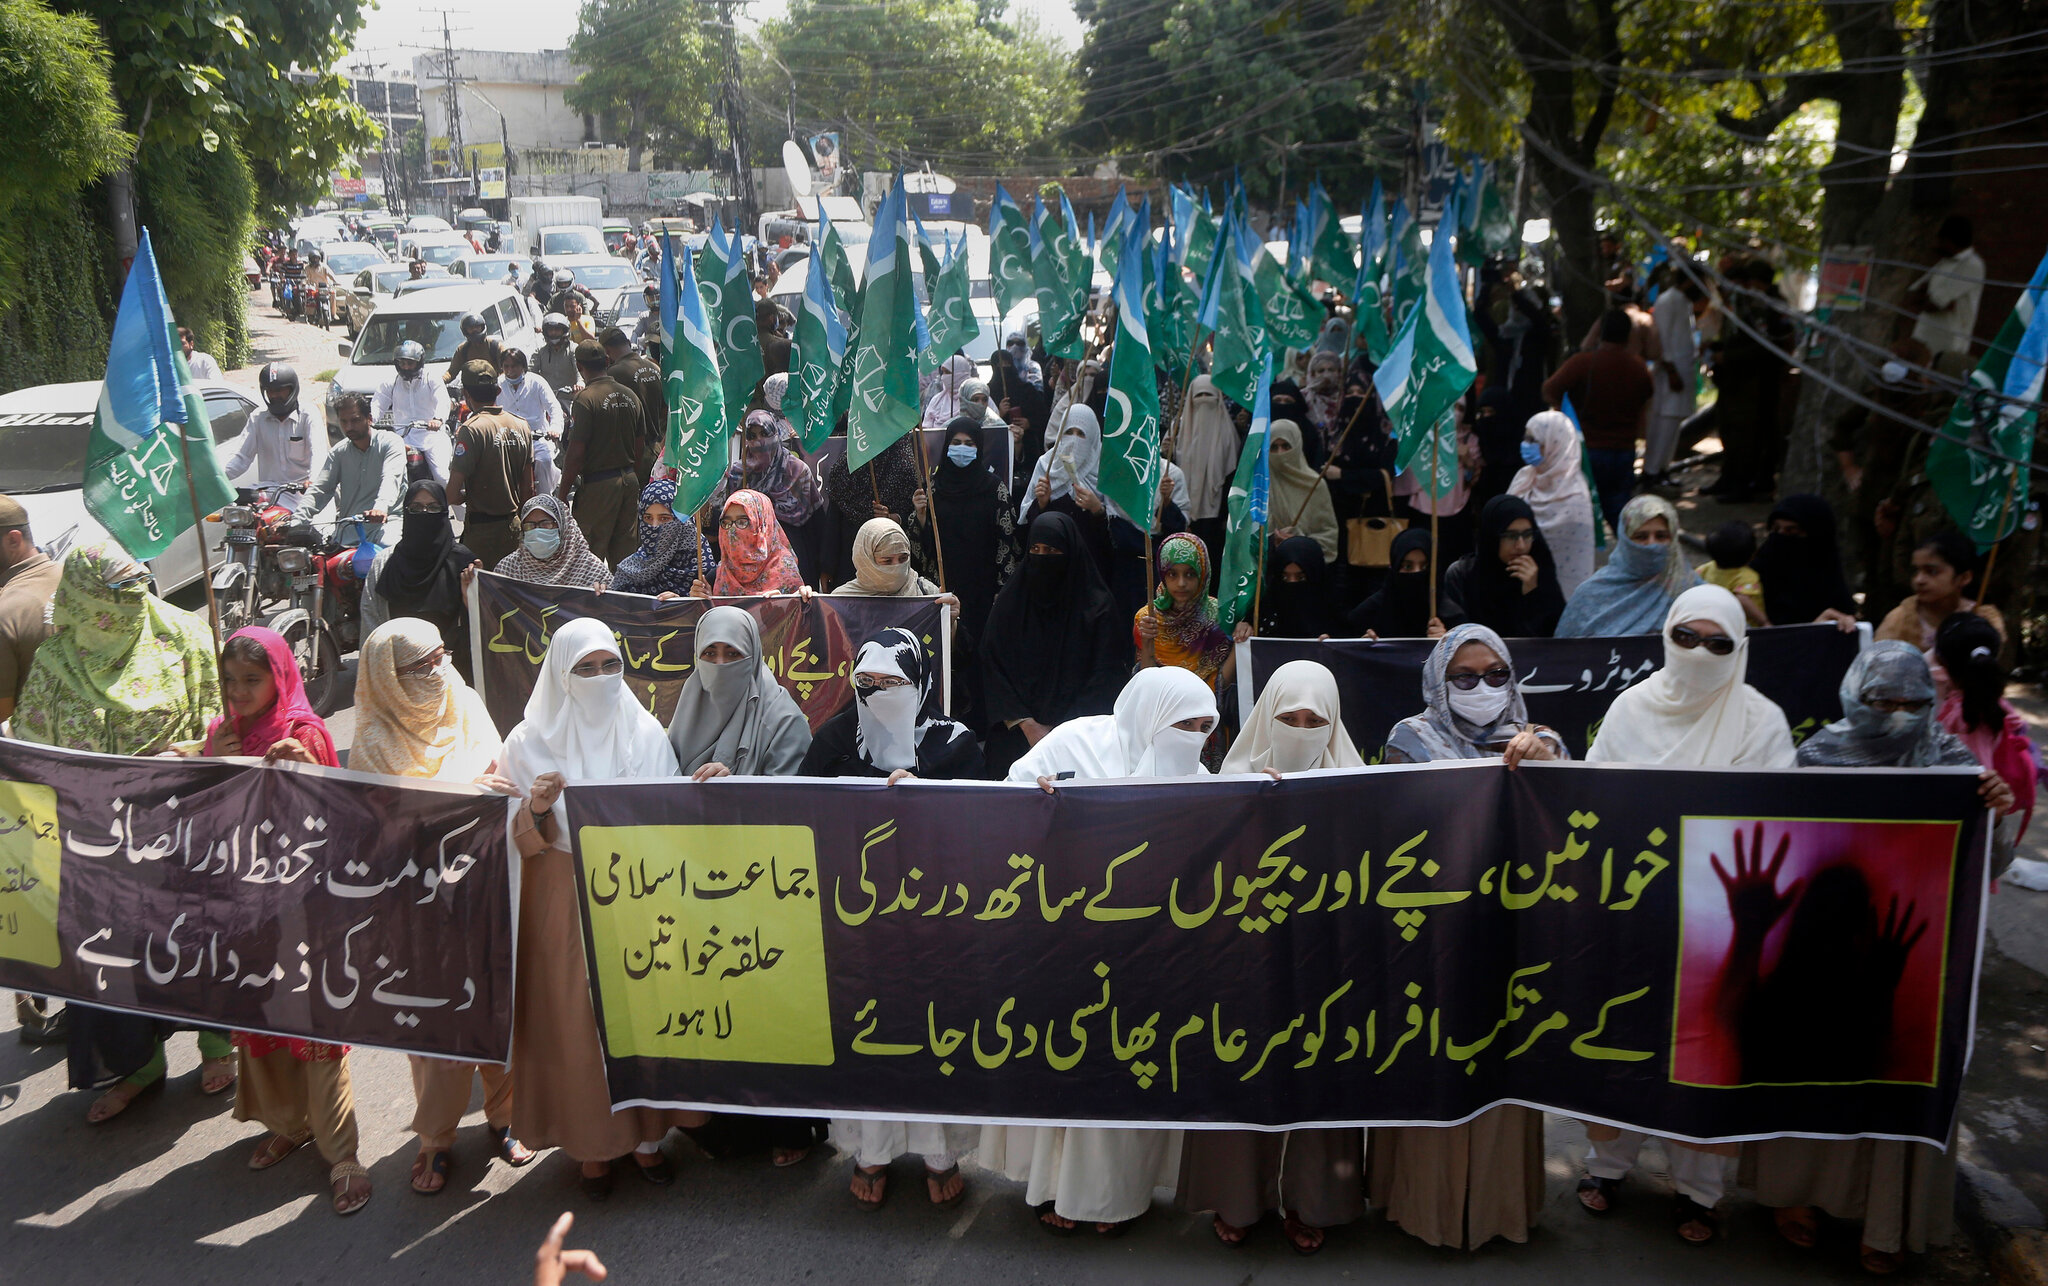 Πακιστάν: Αποφυλακίστηκε βιαστής, χάρη σε «συμφωνία» να παντρευτεί το θύμα- Η απόφαση εξόργισε